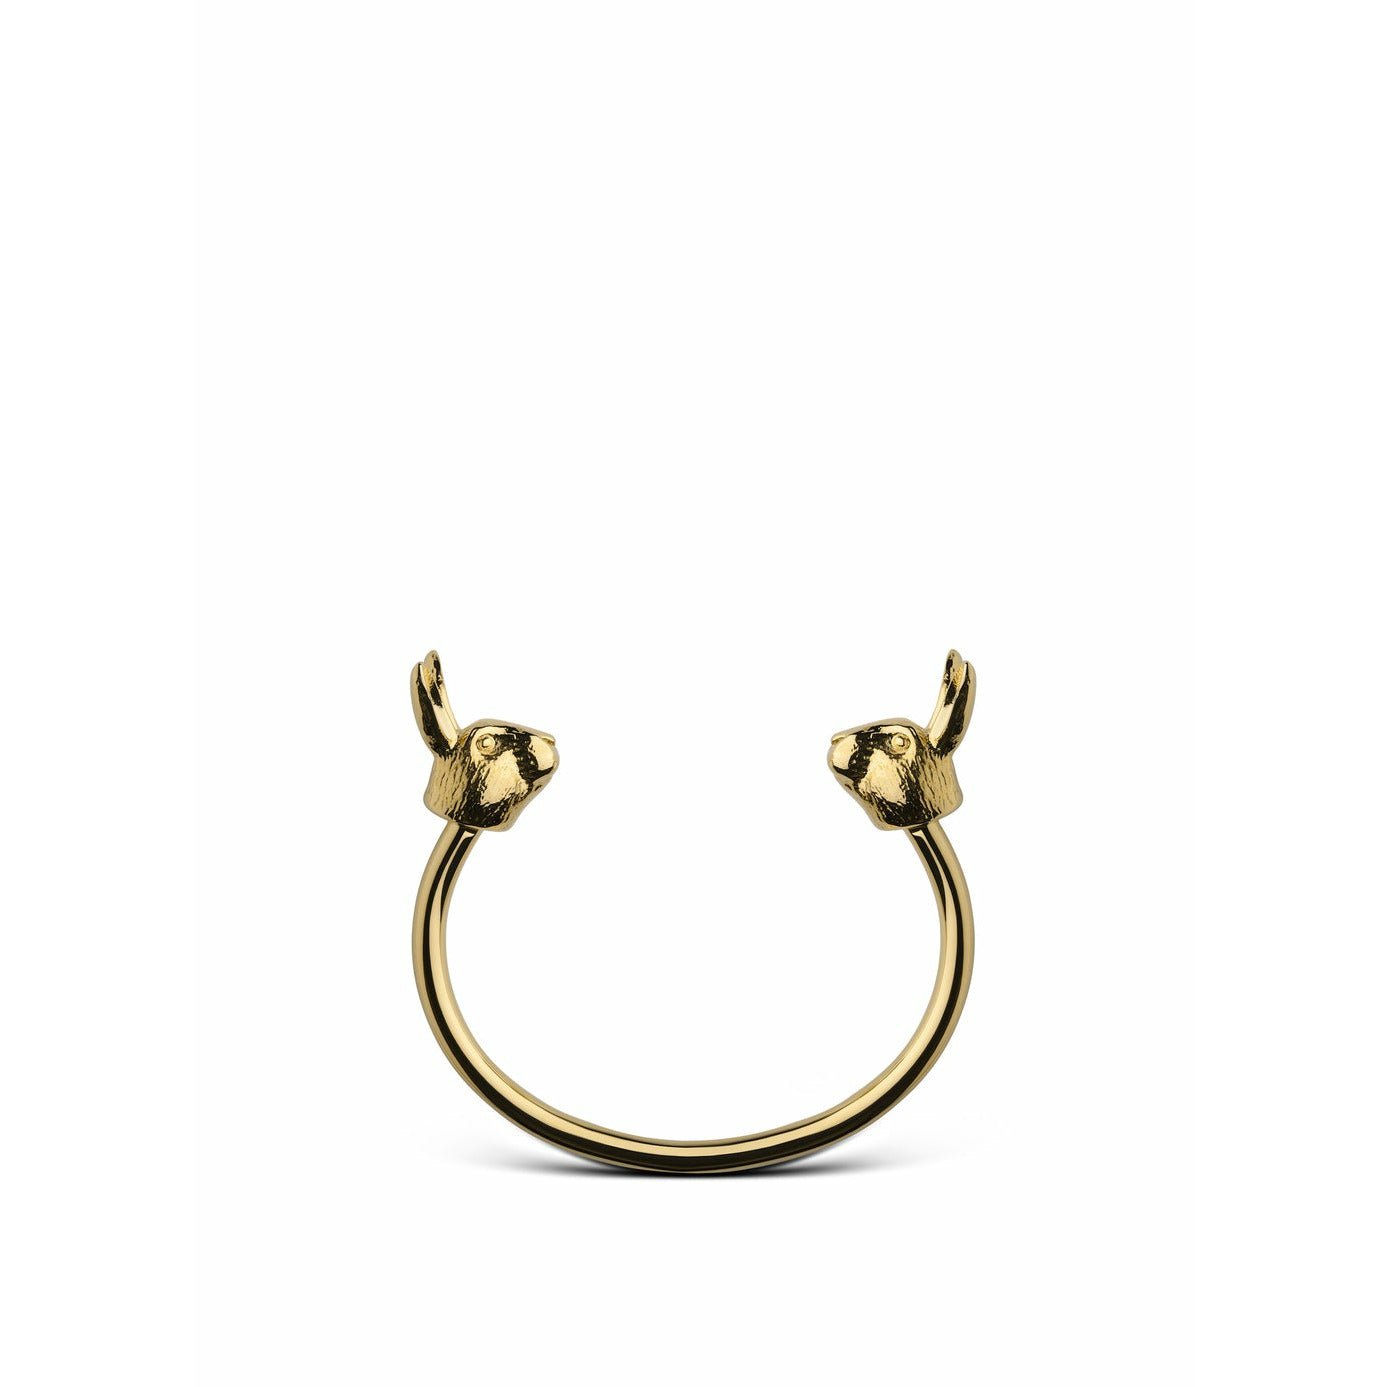 Skultuna Det nordiske dyrelivets armbånd stort gullbelagt, ø18,5 cm